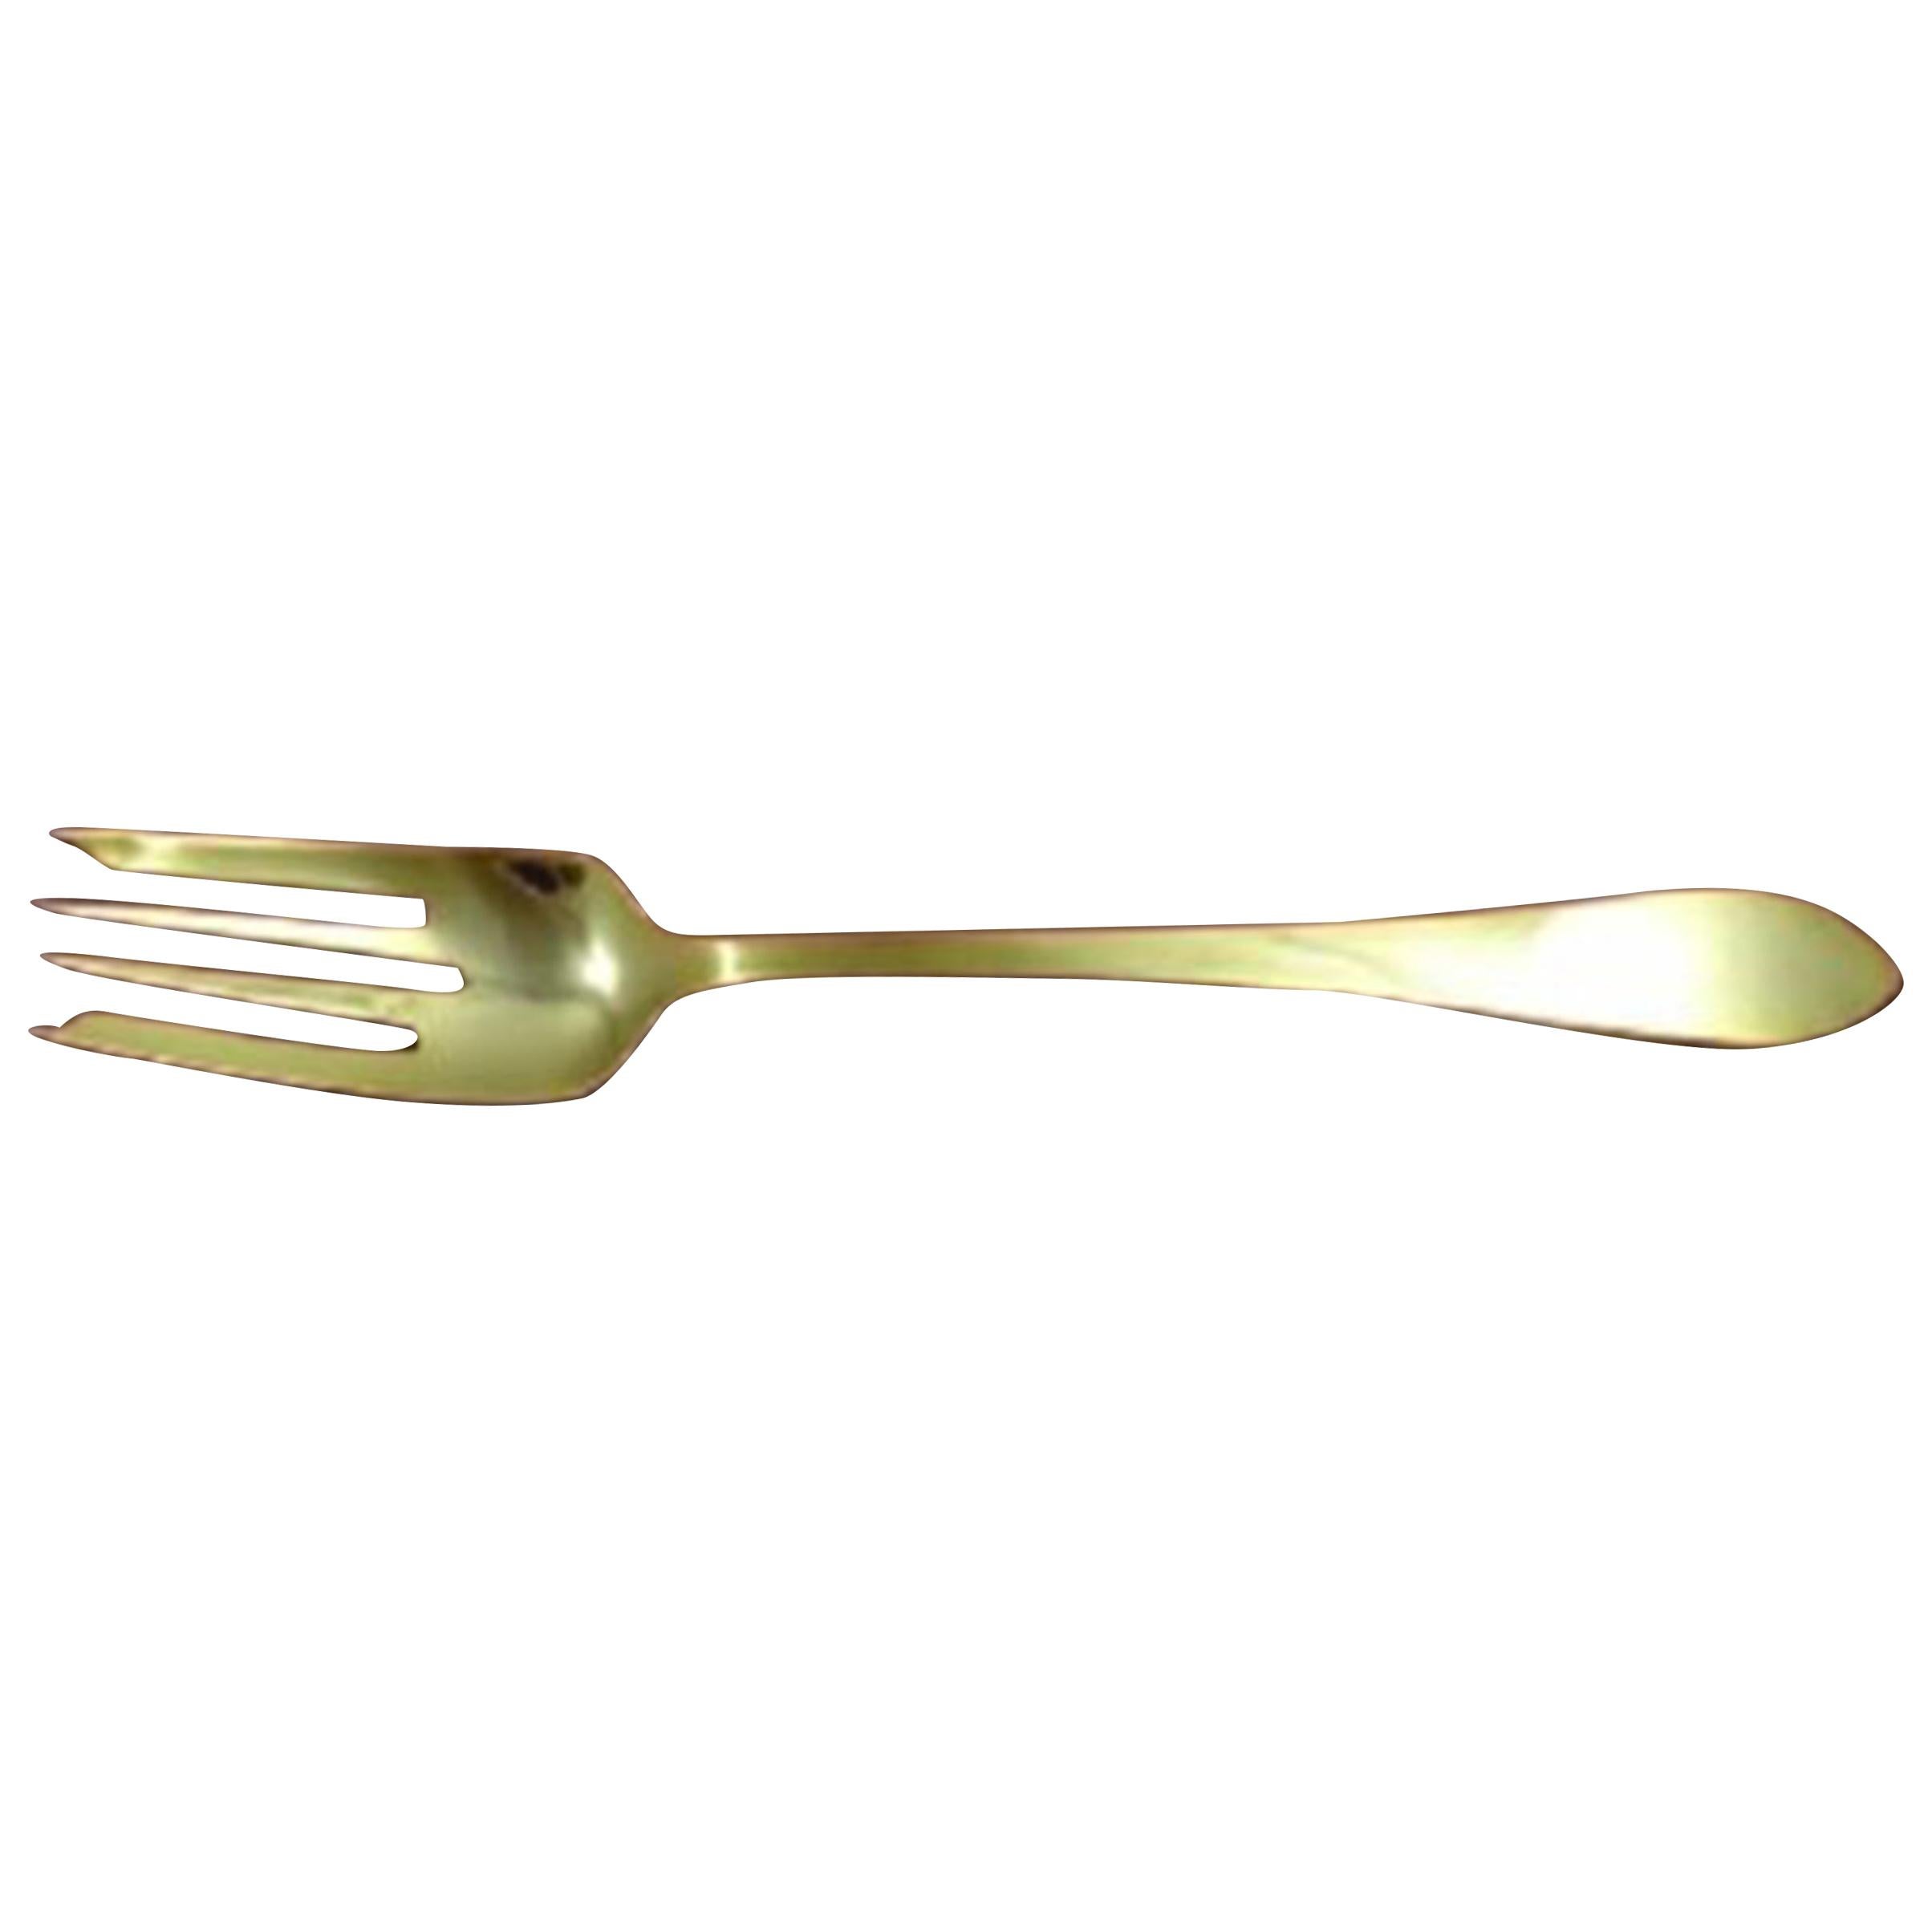 Sterling silver salad fork 6 3/4